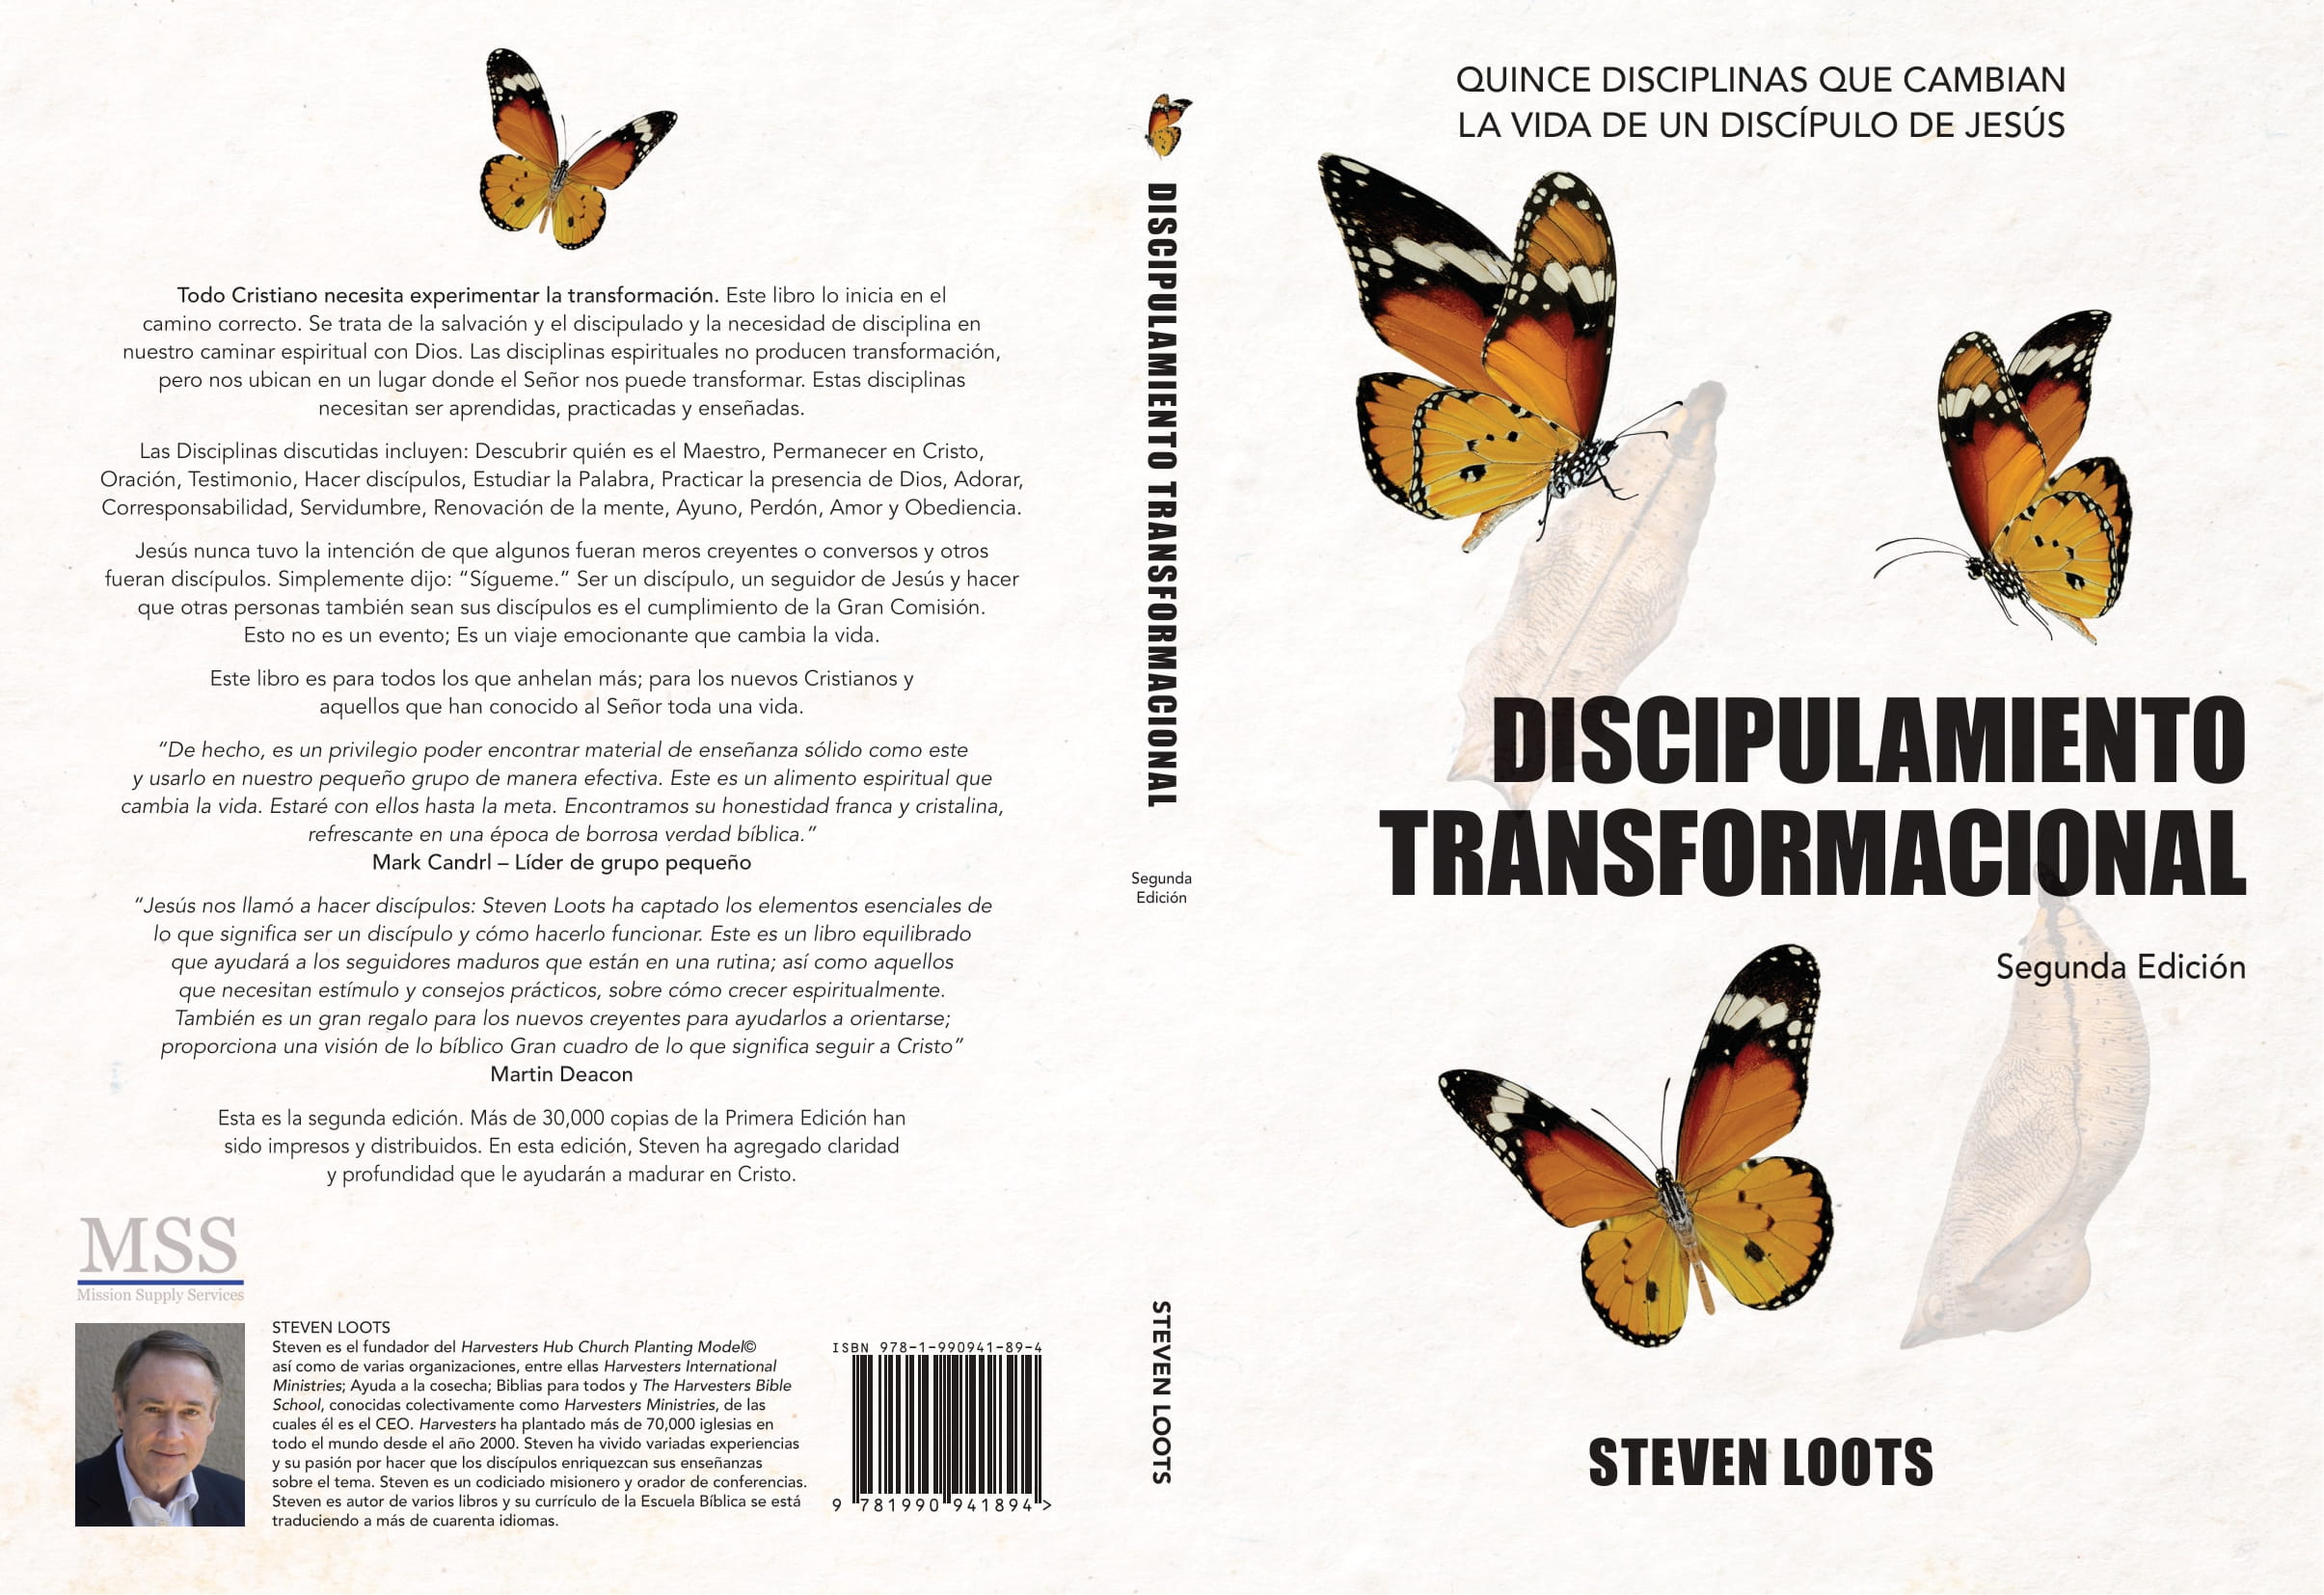 Discipulamiento Transformacional: Quince Disciplinas que Cambian la Vida de un Discipulo de Jesus (Spanish Edition)